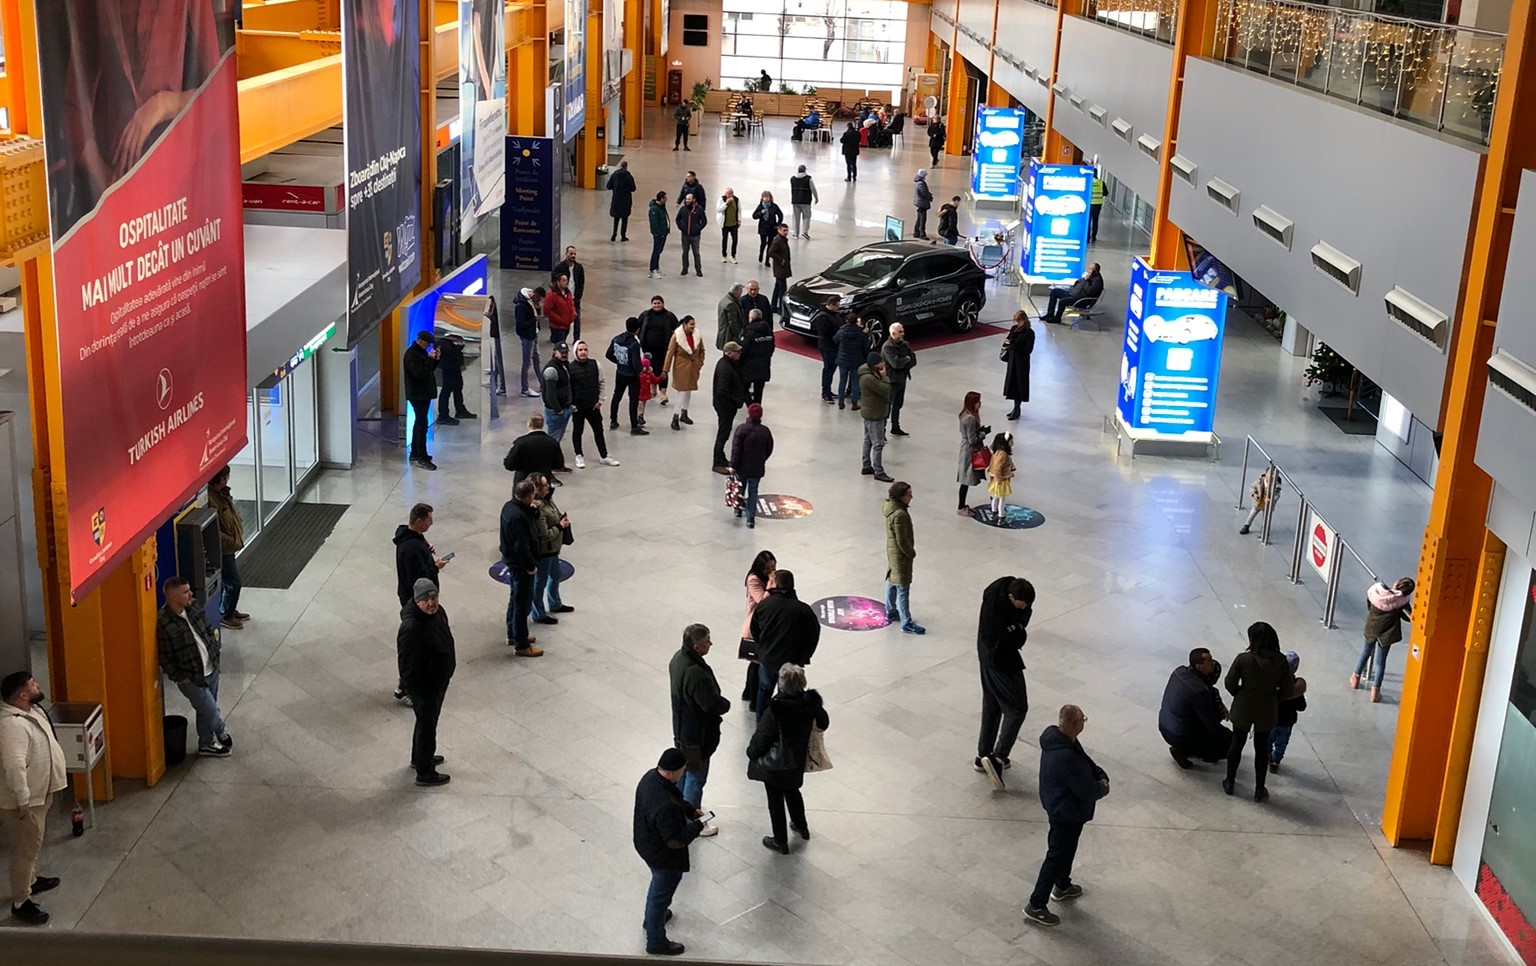 Aeroportul Internațional „Avram Iancu” Cluj-Napoca, a anunțat implementarea unui nou proiect din fonduri europene care constă în achiziționarea unor echipamente de siguranță, inclusiv camere de supraveghere cu detecție facială/ Foto: Aeroportul Internațional Avram Iancu Cluj - Facebook